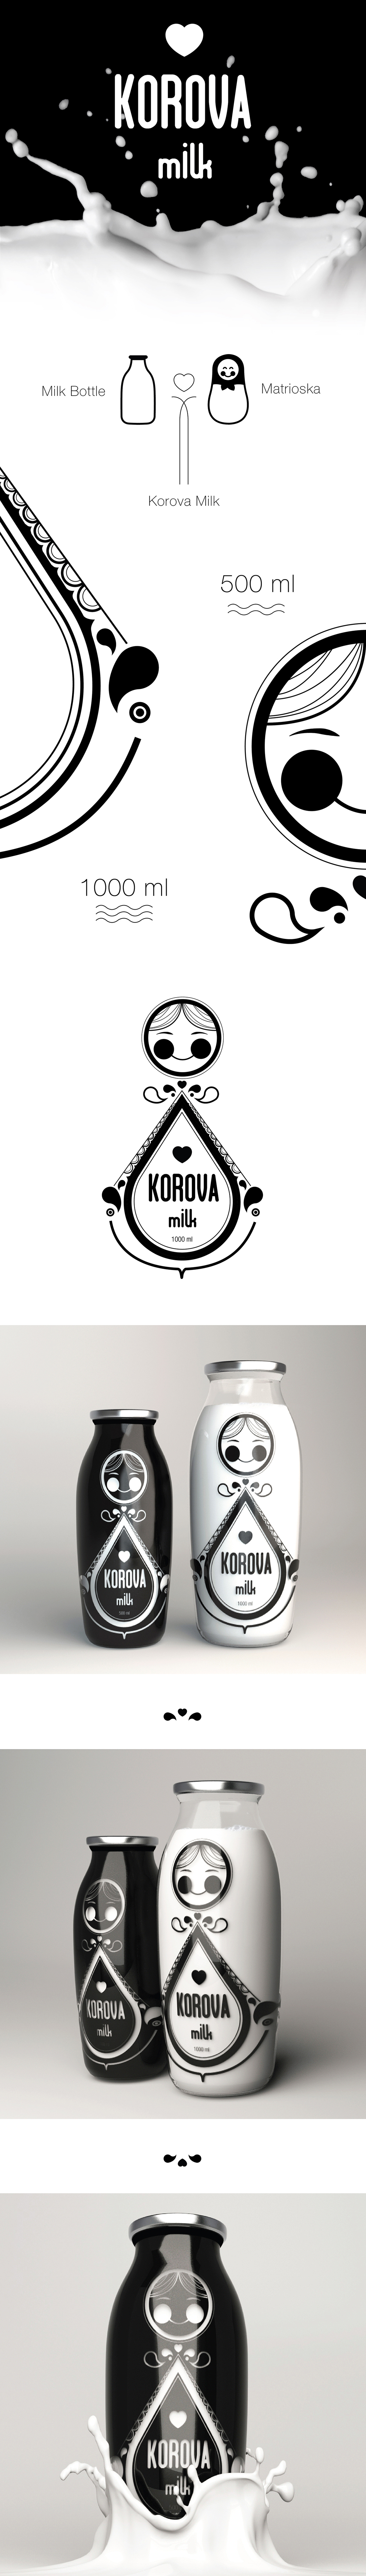 milk bottle product design matrioska Korova russian Pack package black